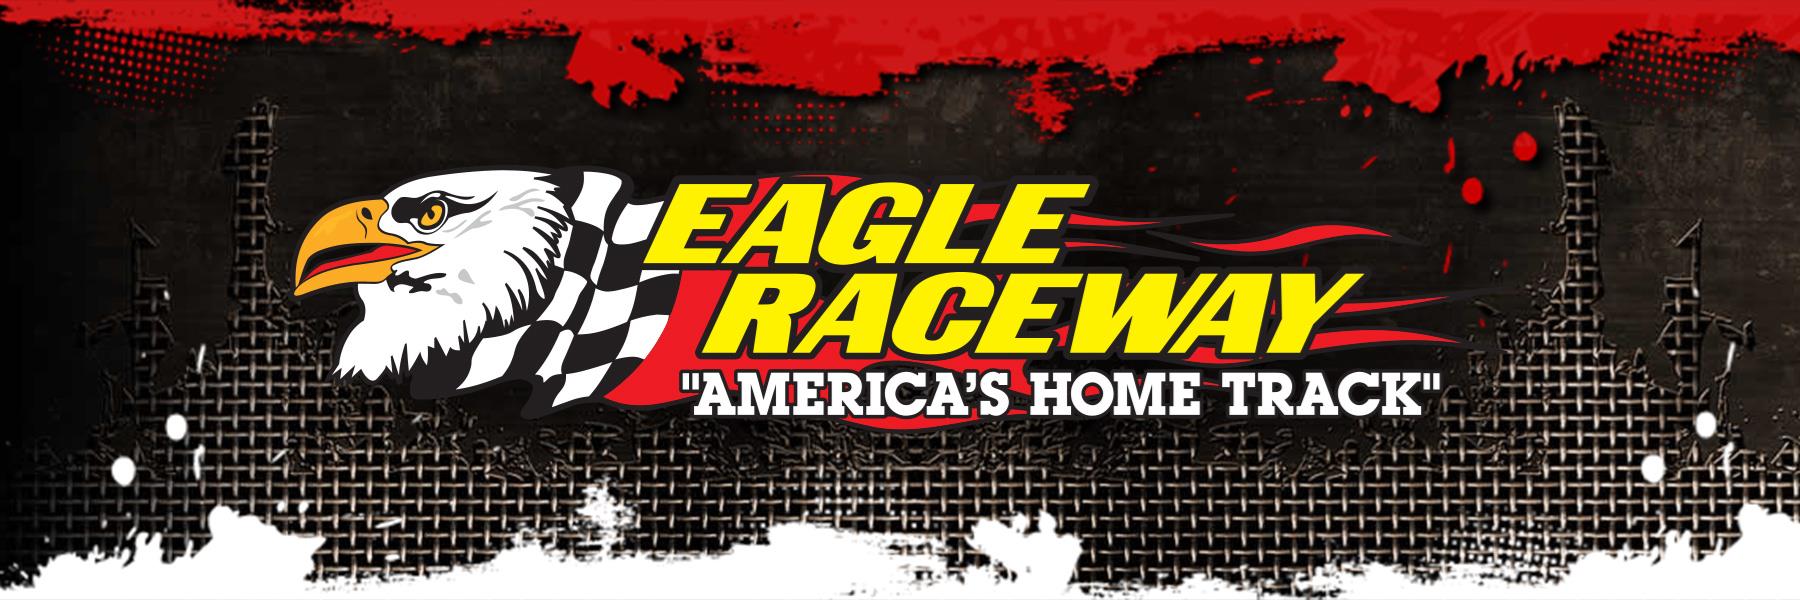 4/24/2015 - Eagle Raceway